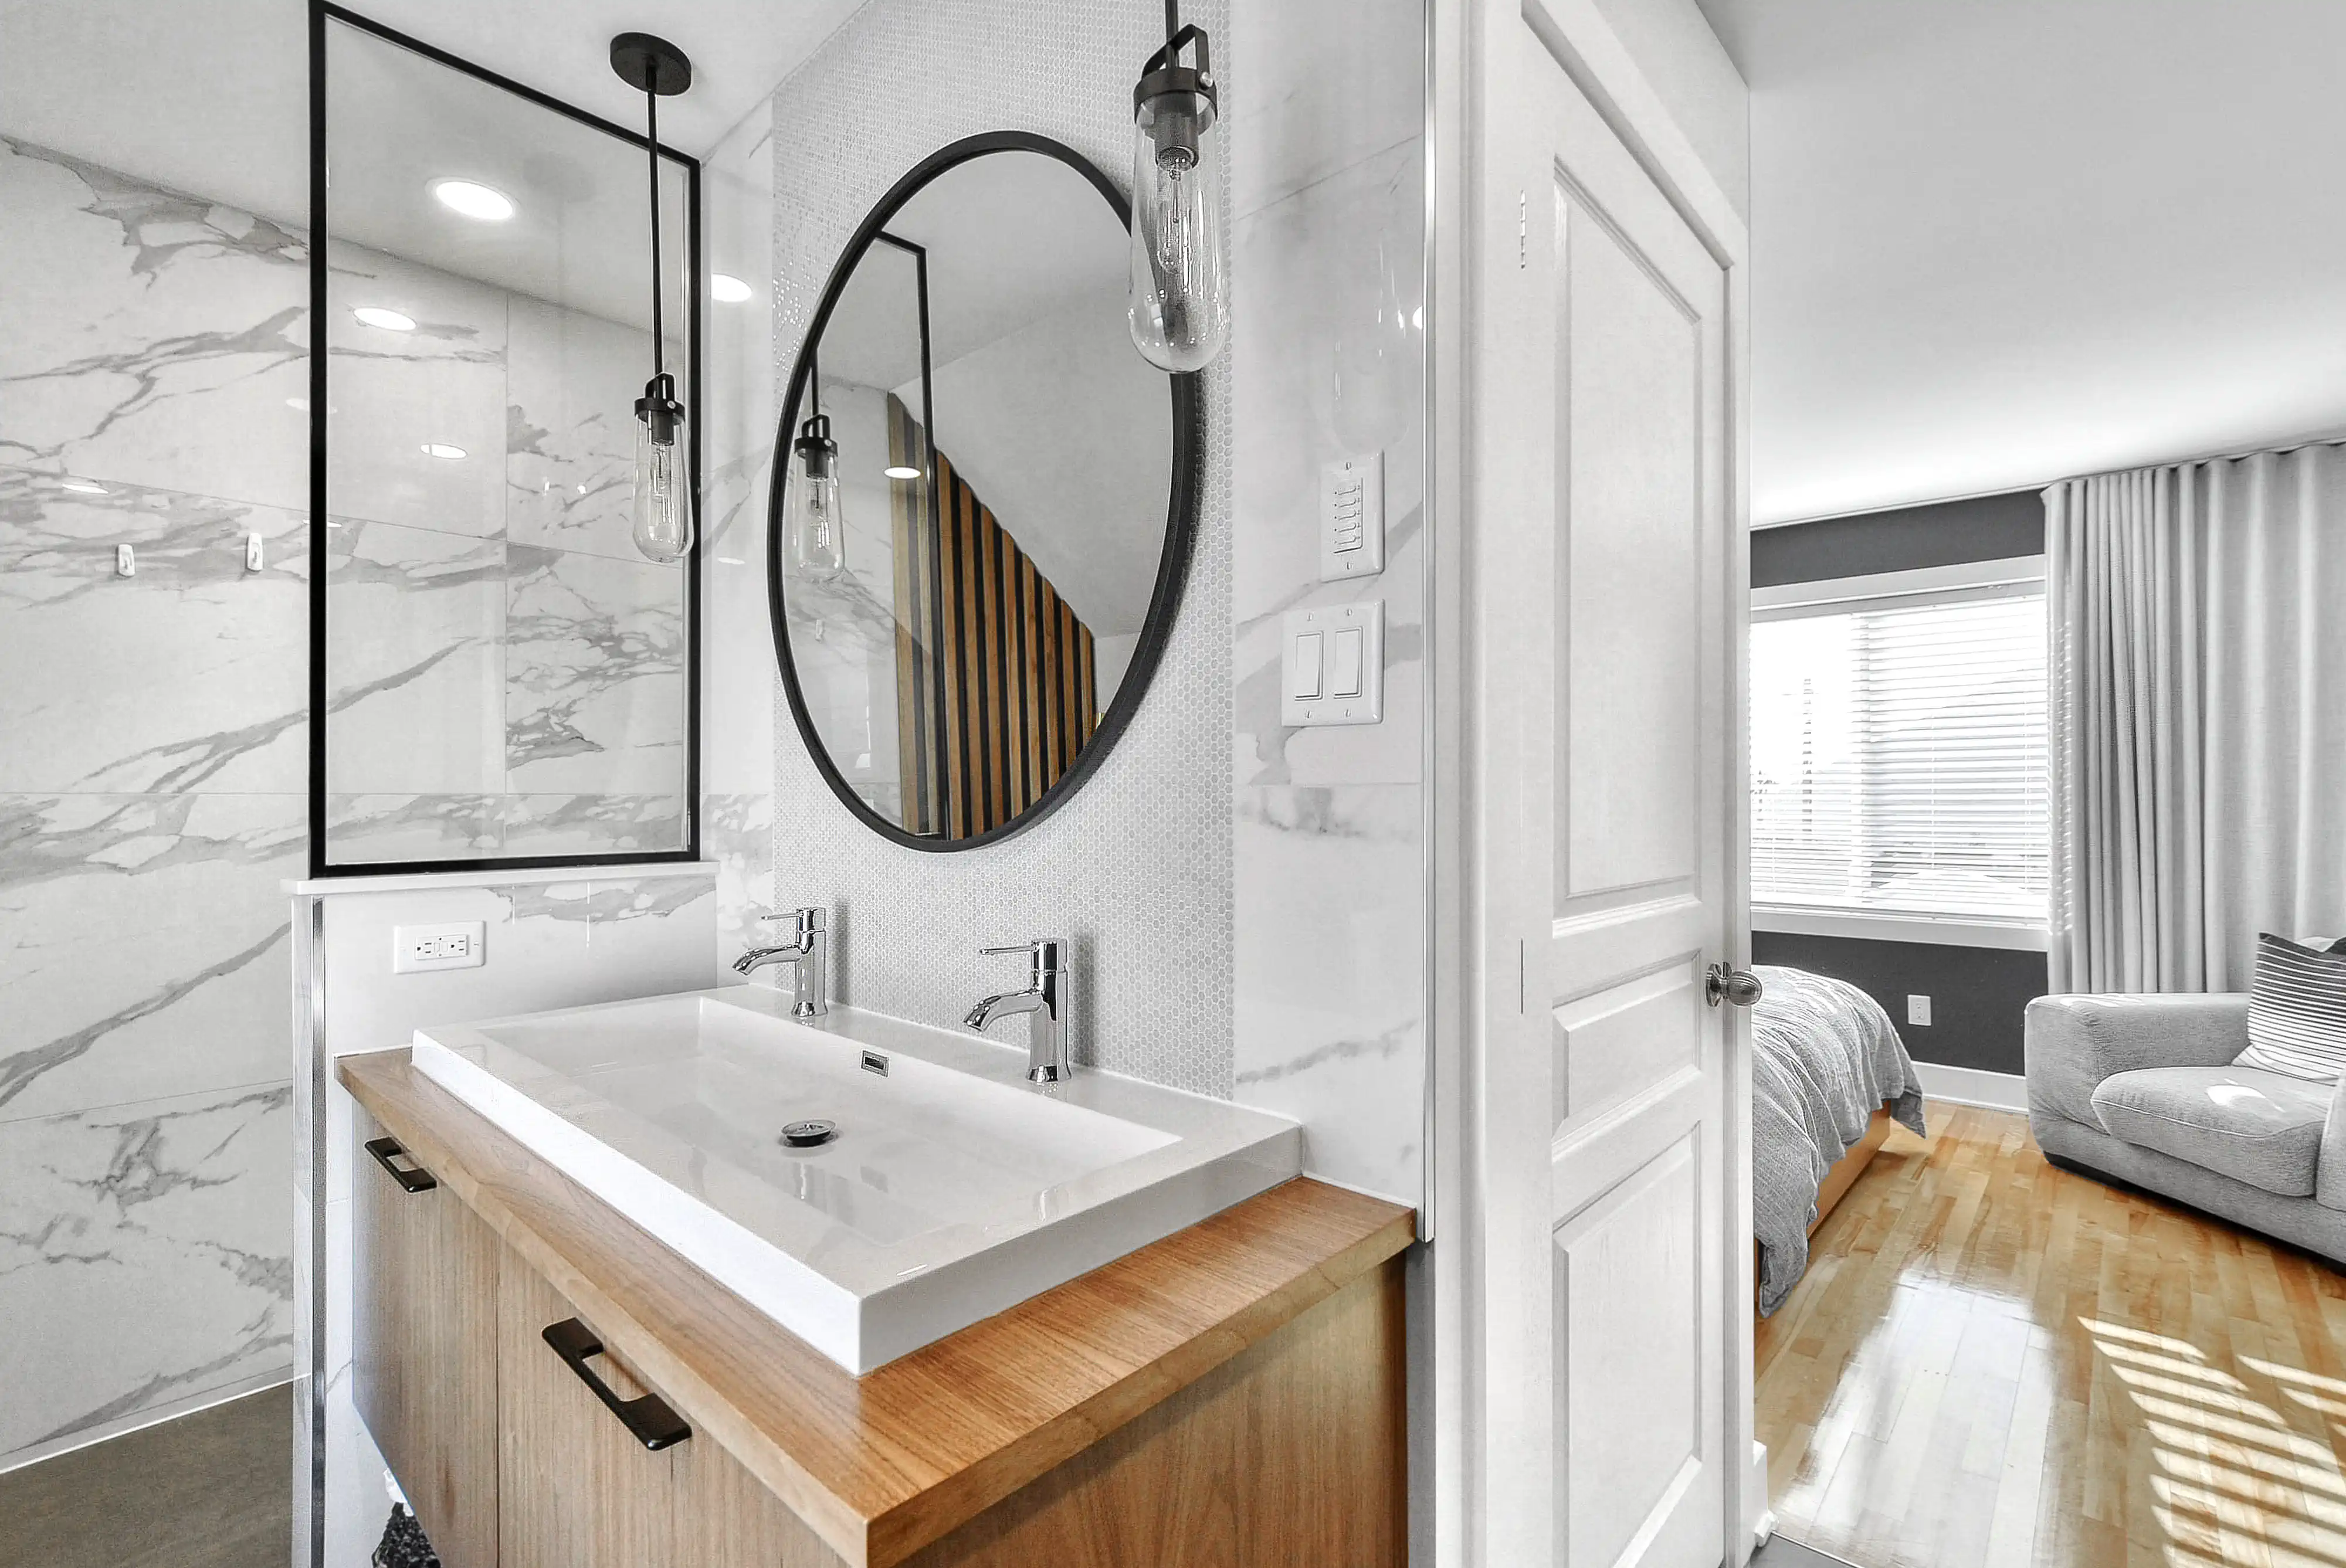 Salle de bain moderne avec un lavabo blanc, un miroir rond avec cadre noir et une douche avec porte en verre, intérieur signé Sarah Brown Design